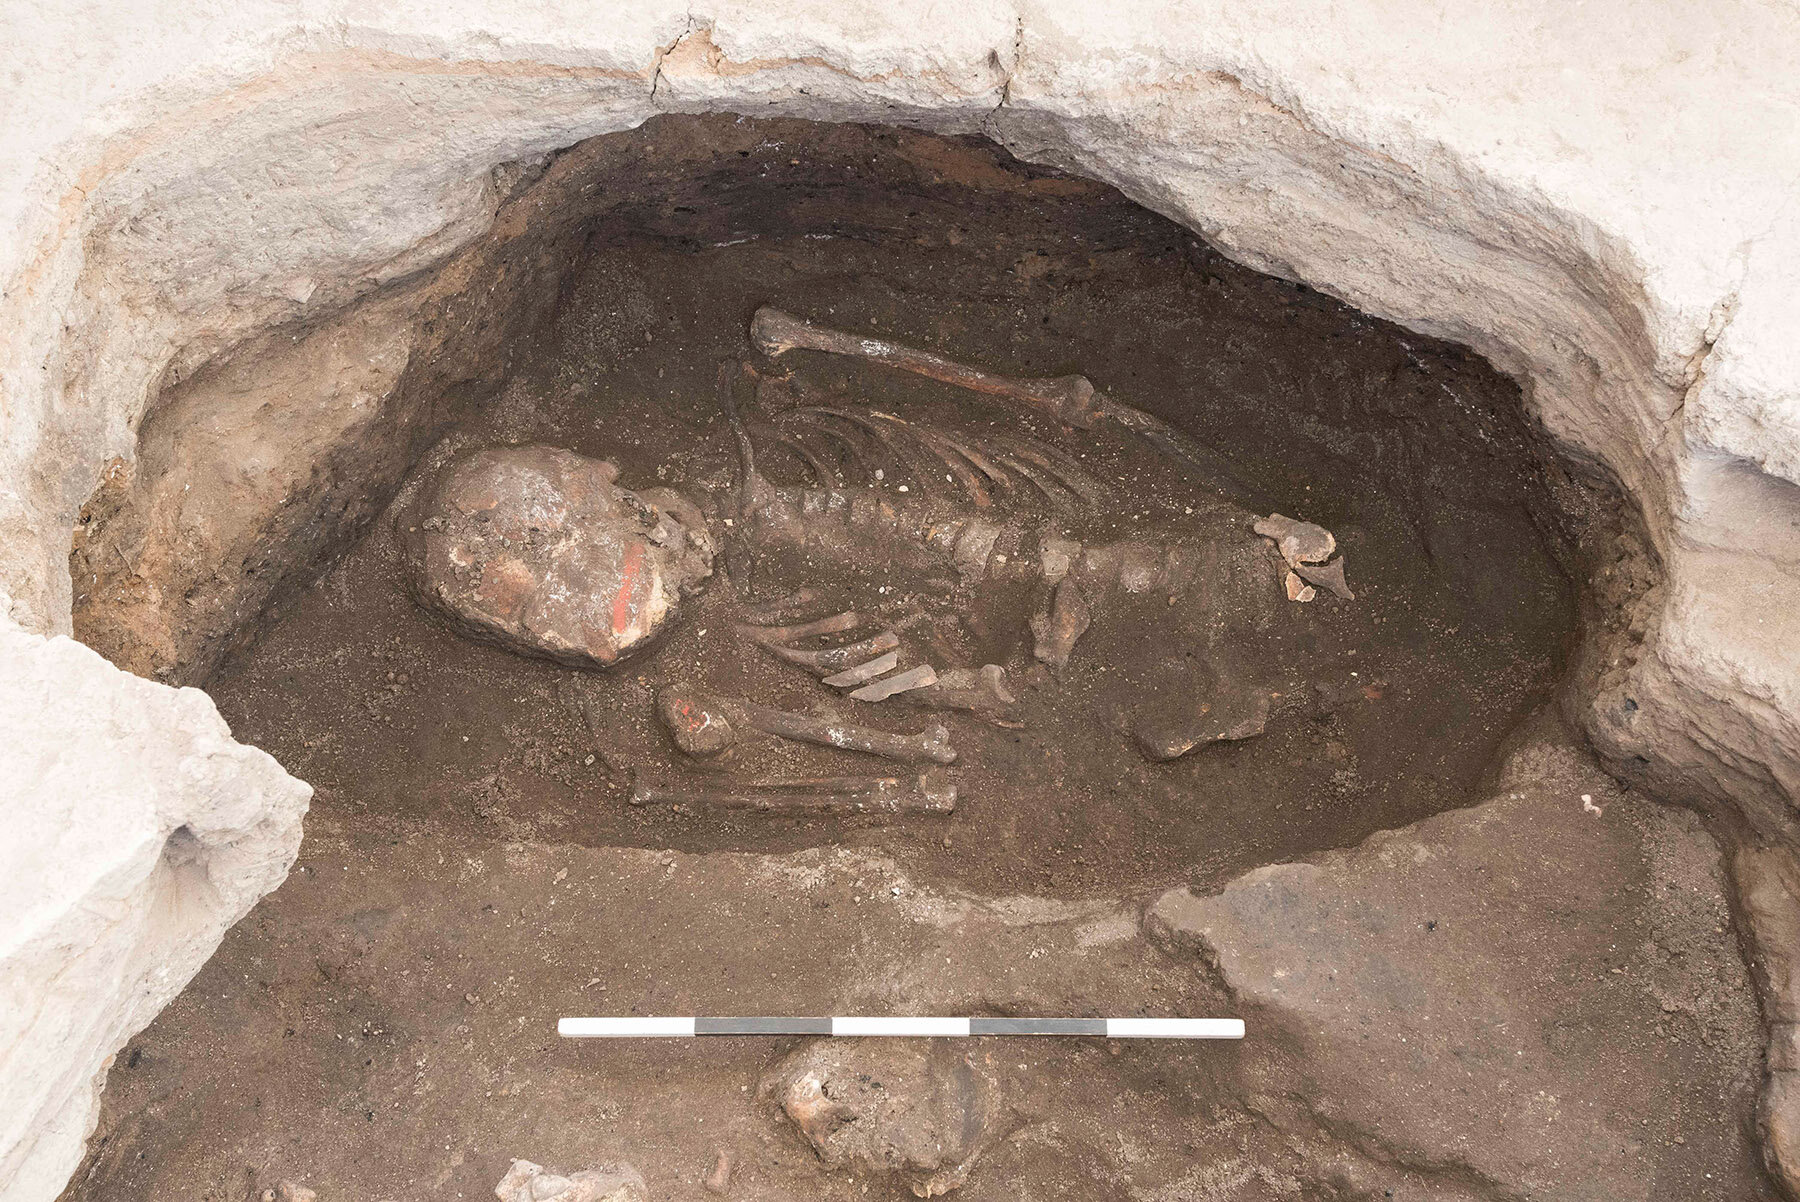 Examining the colored skeletons of Çatalhöyük